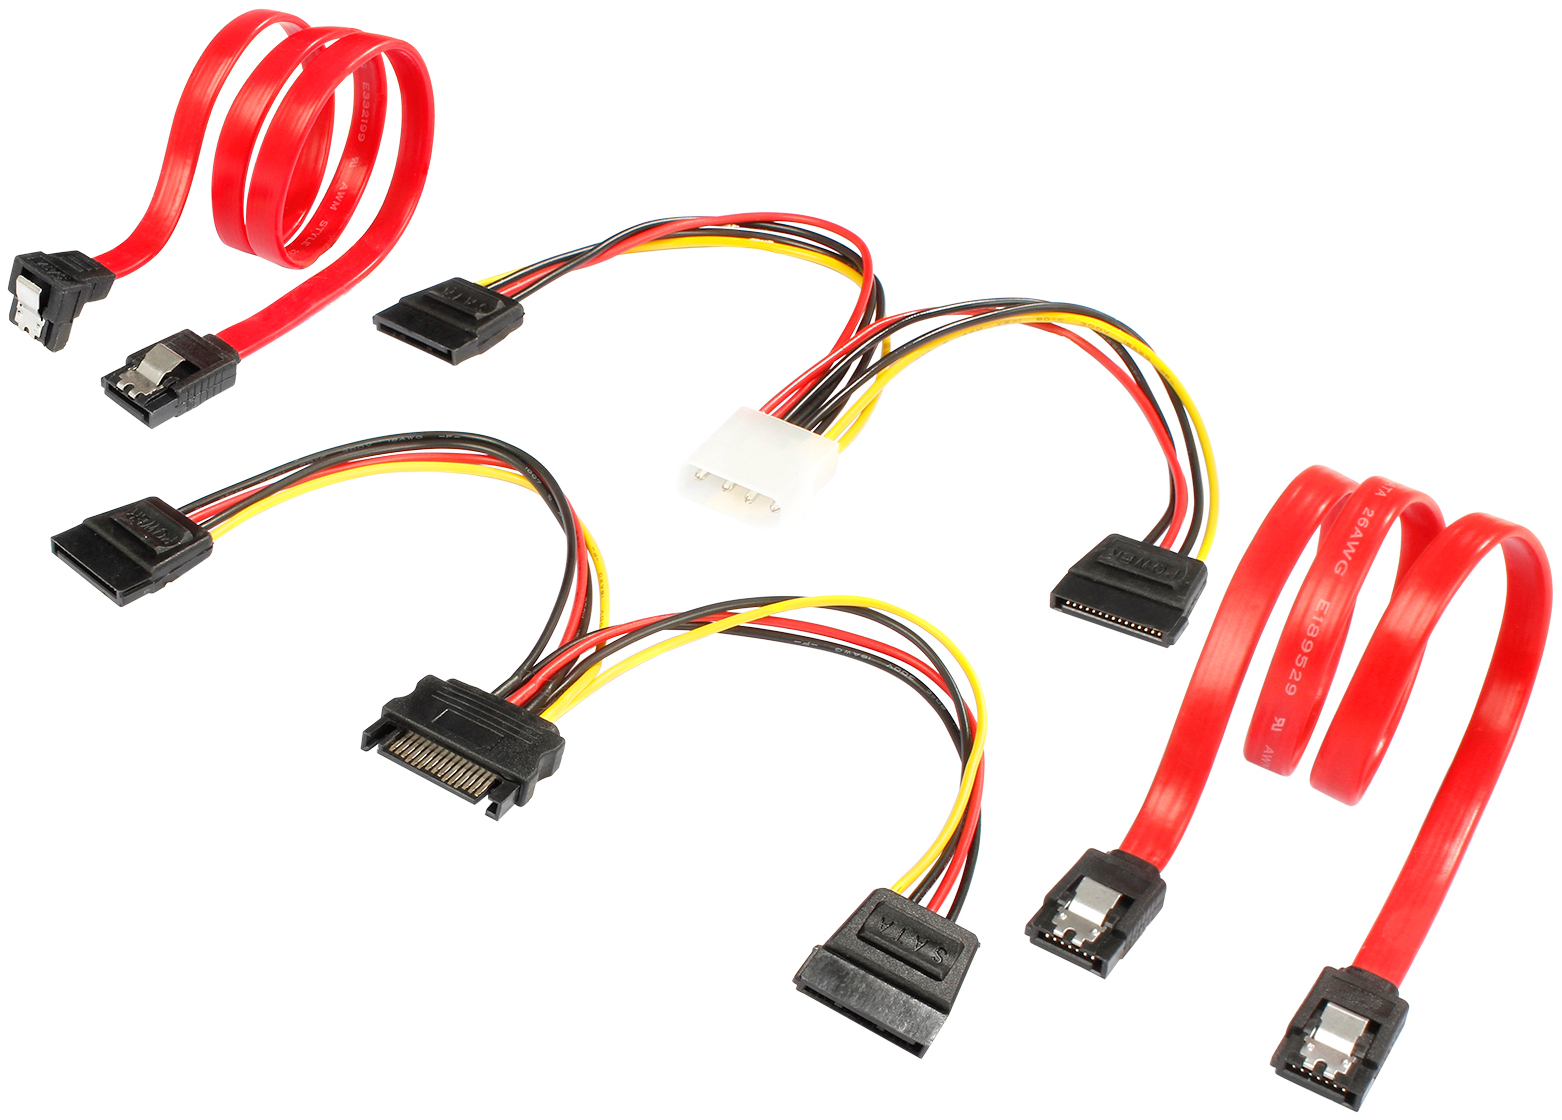 SATA 3 Kabel Set, 2x Datenkabel, je 1 SATA und Molex Y-Stromkabel